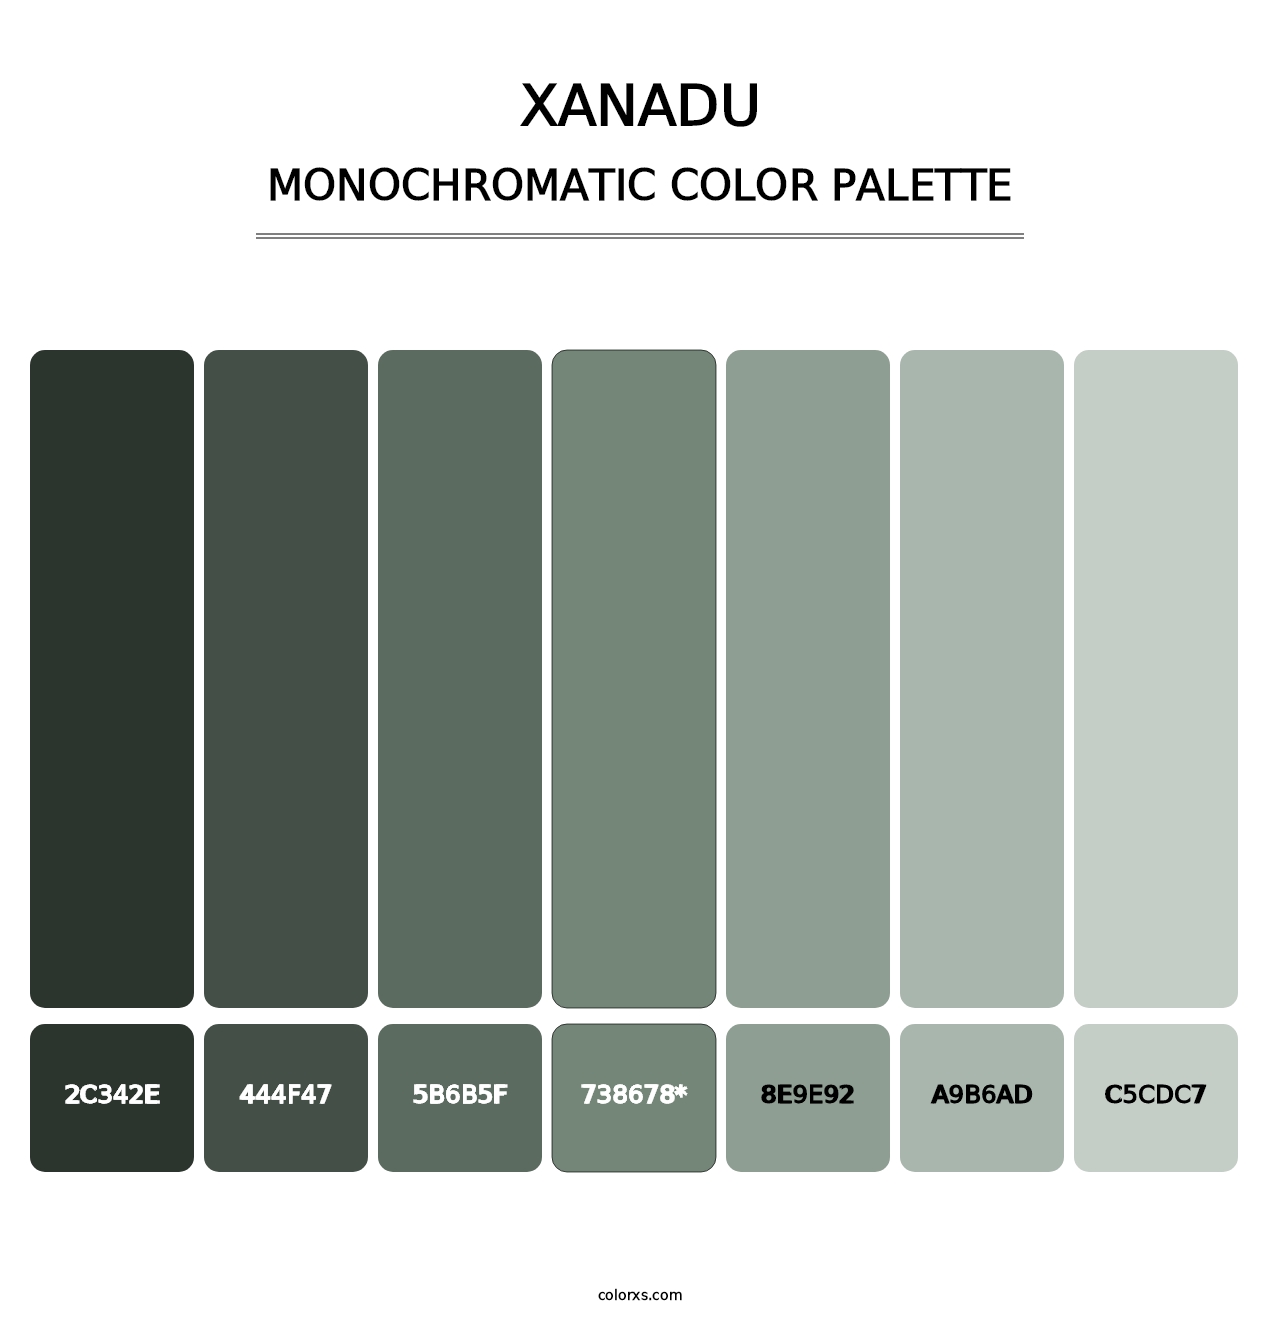 Xanadu - Monochromatic Color Palette